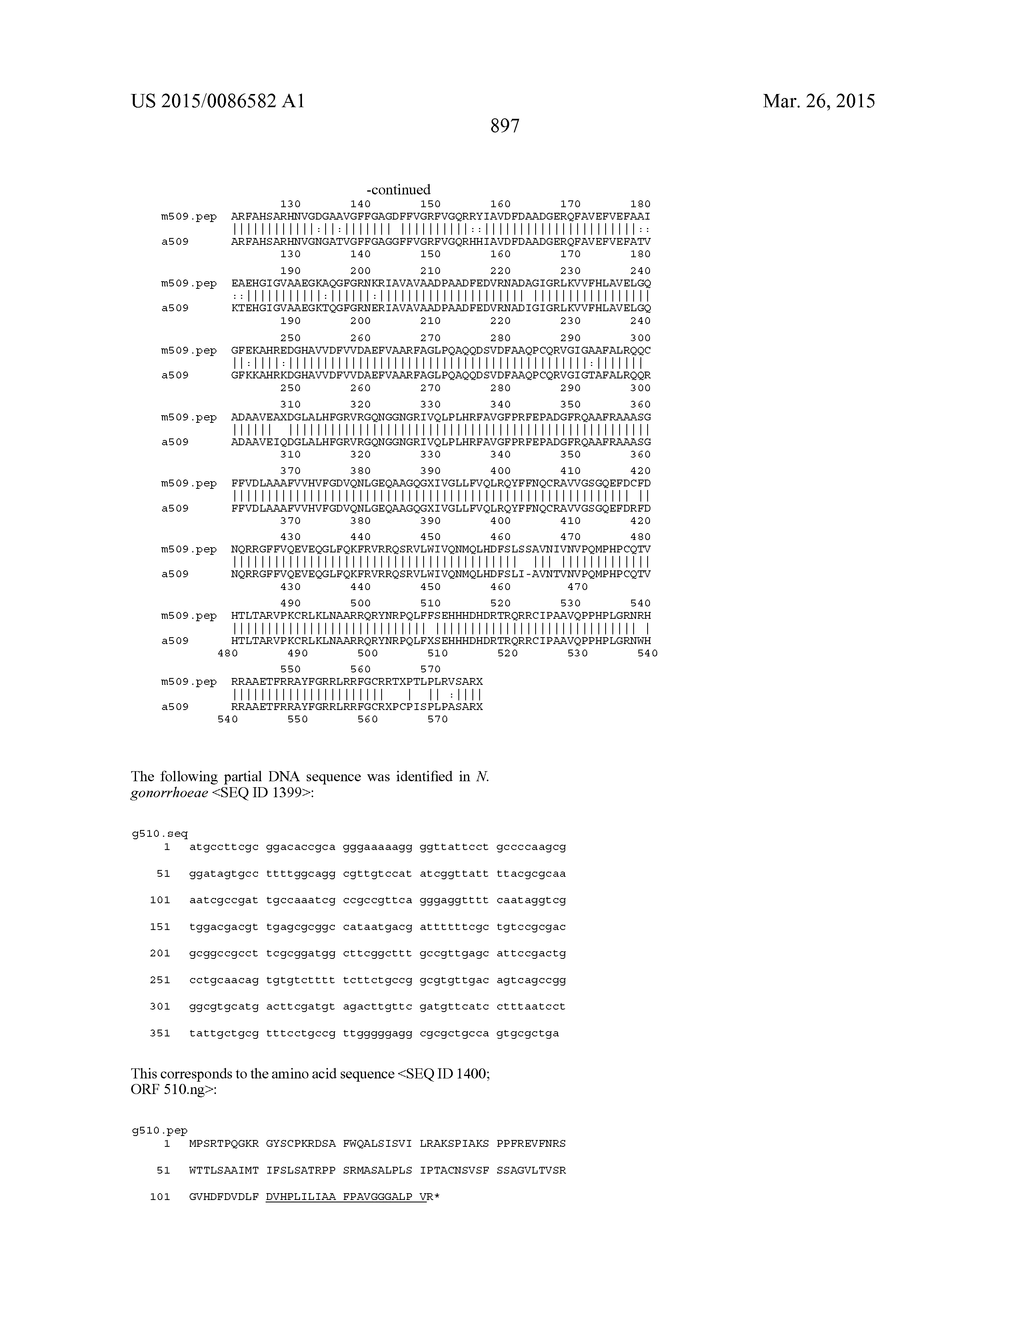 NEISSERIA MENINGITIDIS ANTIGENS AND COMPOSITIONS - diagram, schematic, and image 930